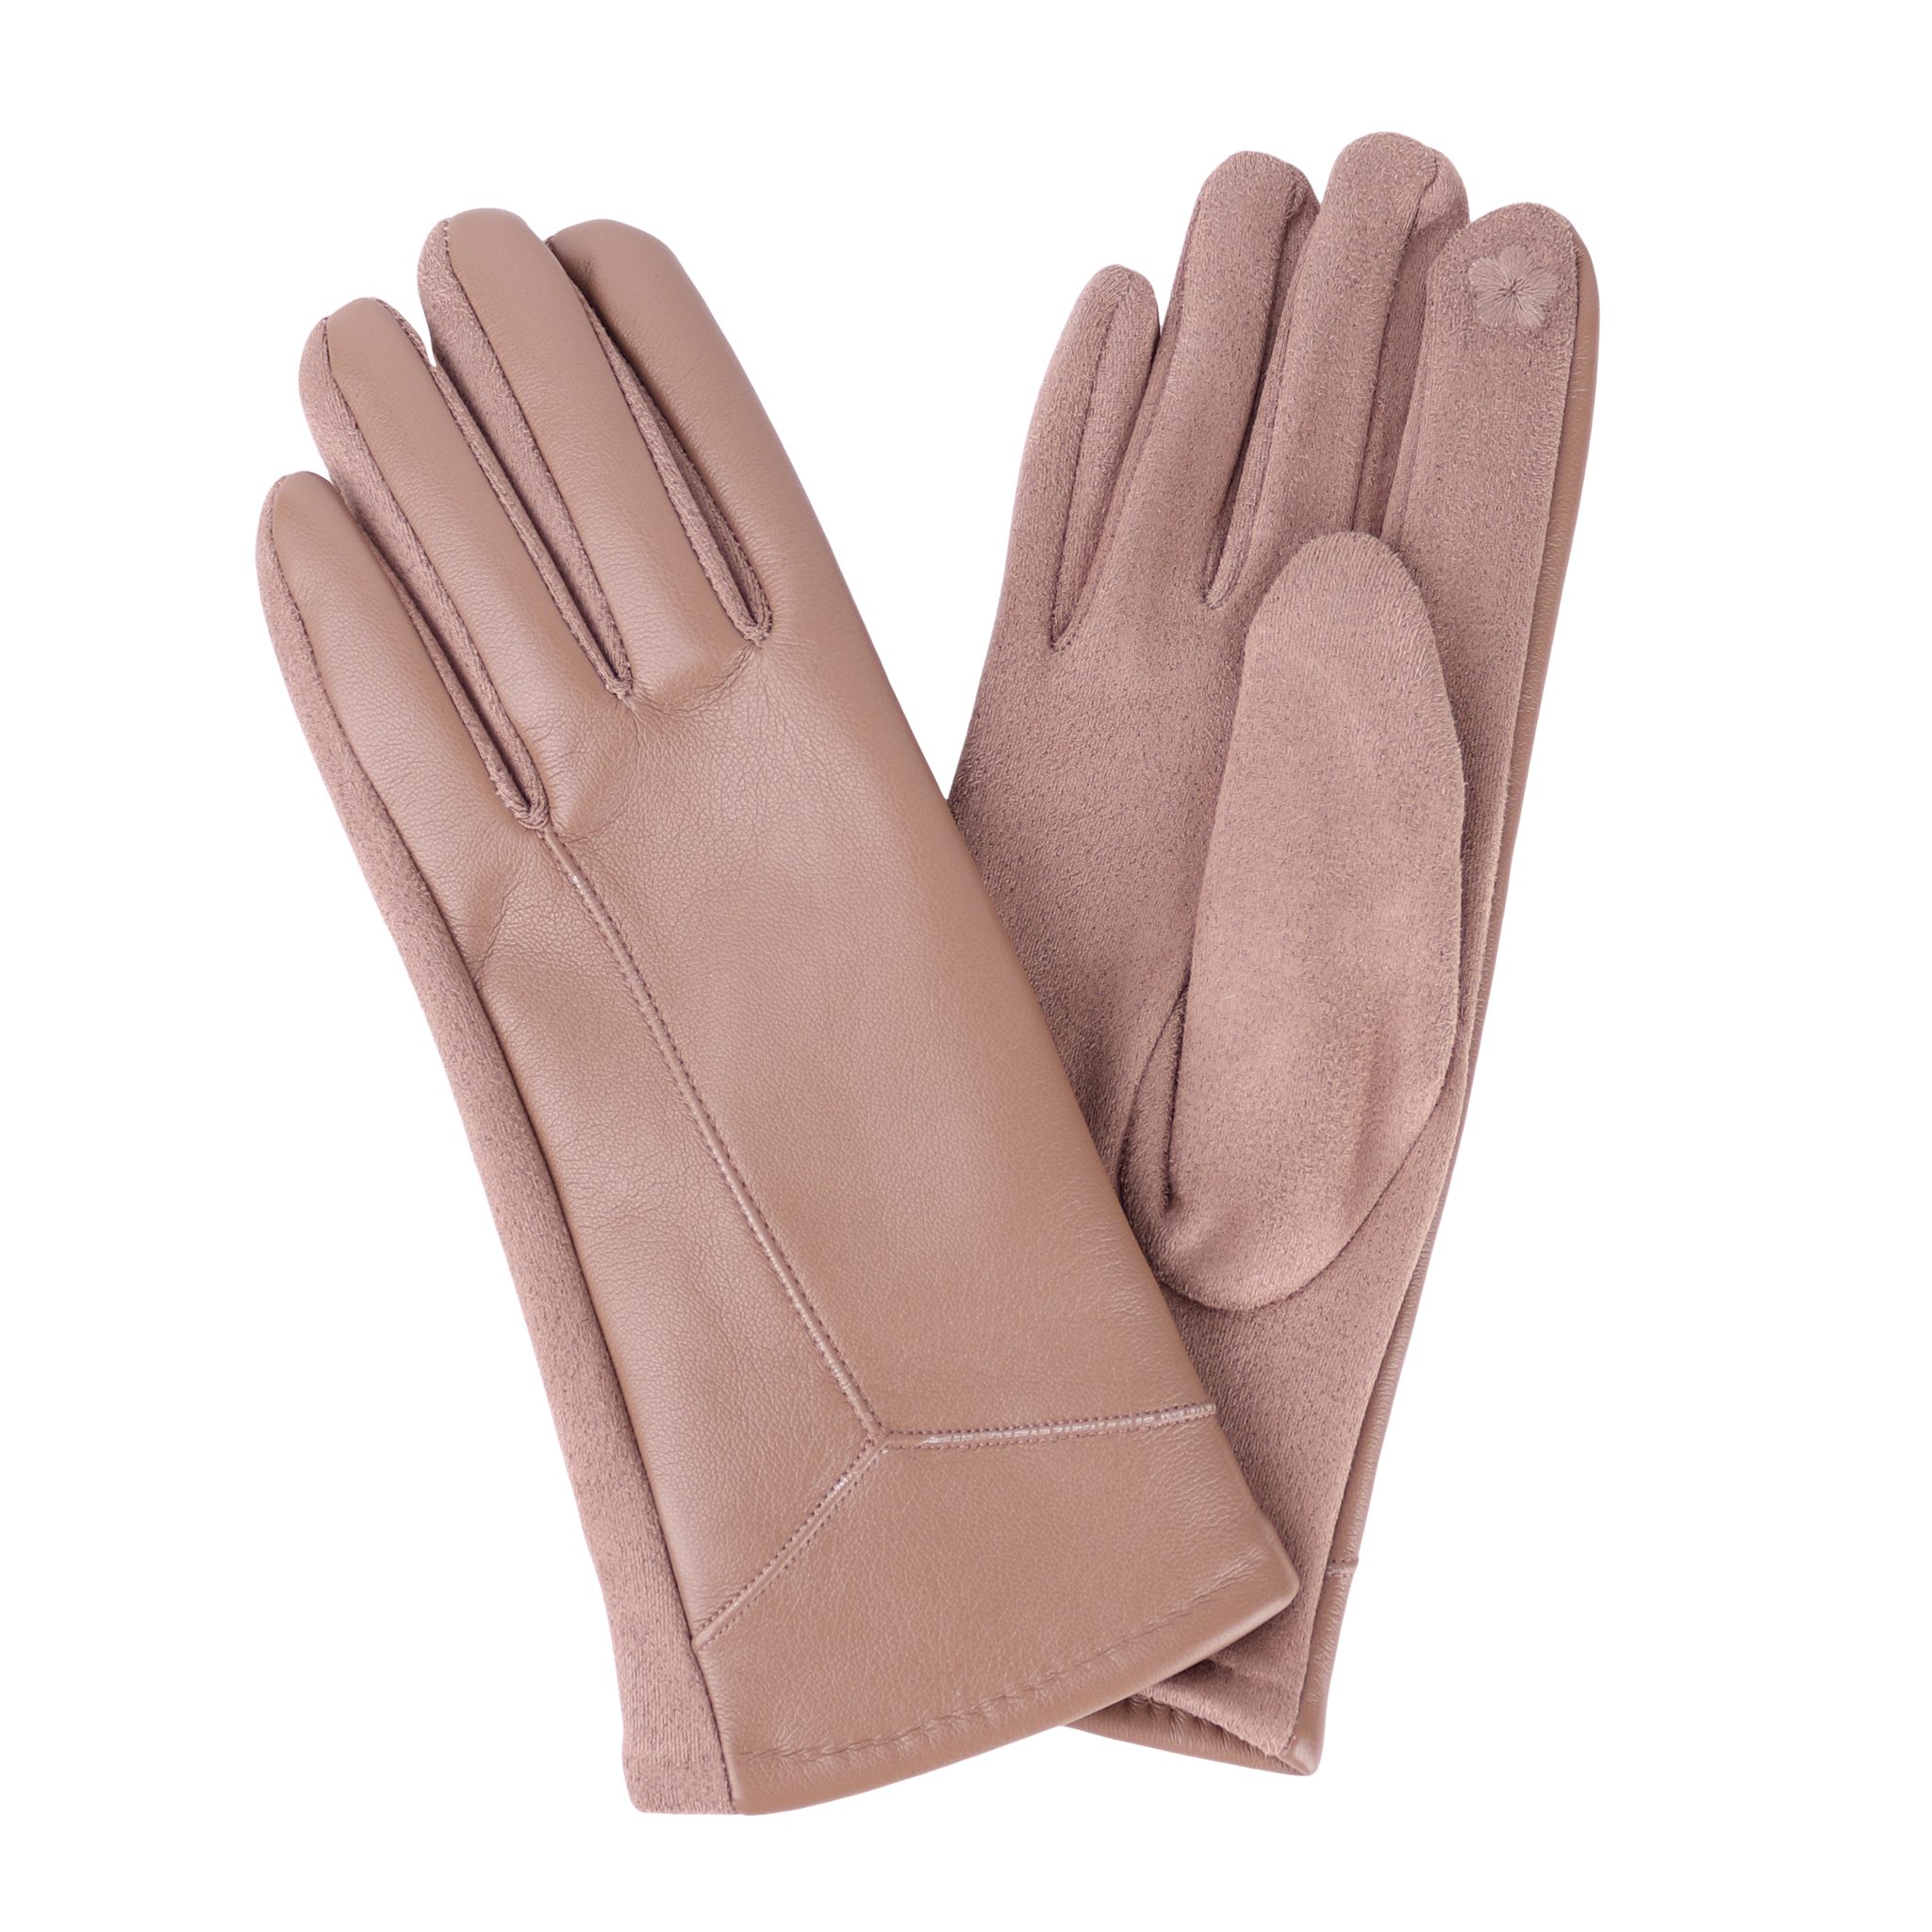 MIRROSI Lederhandschuhe Damen Touchscreen Handschuhe gefüttert Warm ONESIZE aus Veganleder sehr weich und warm ideal für Herbst oder Winter Taupe